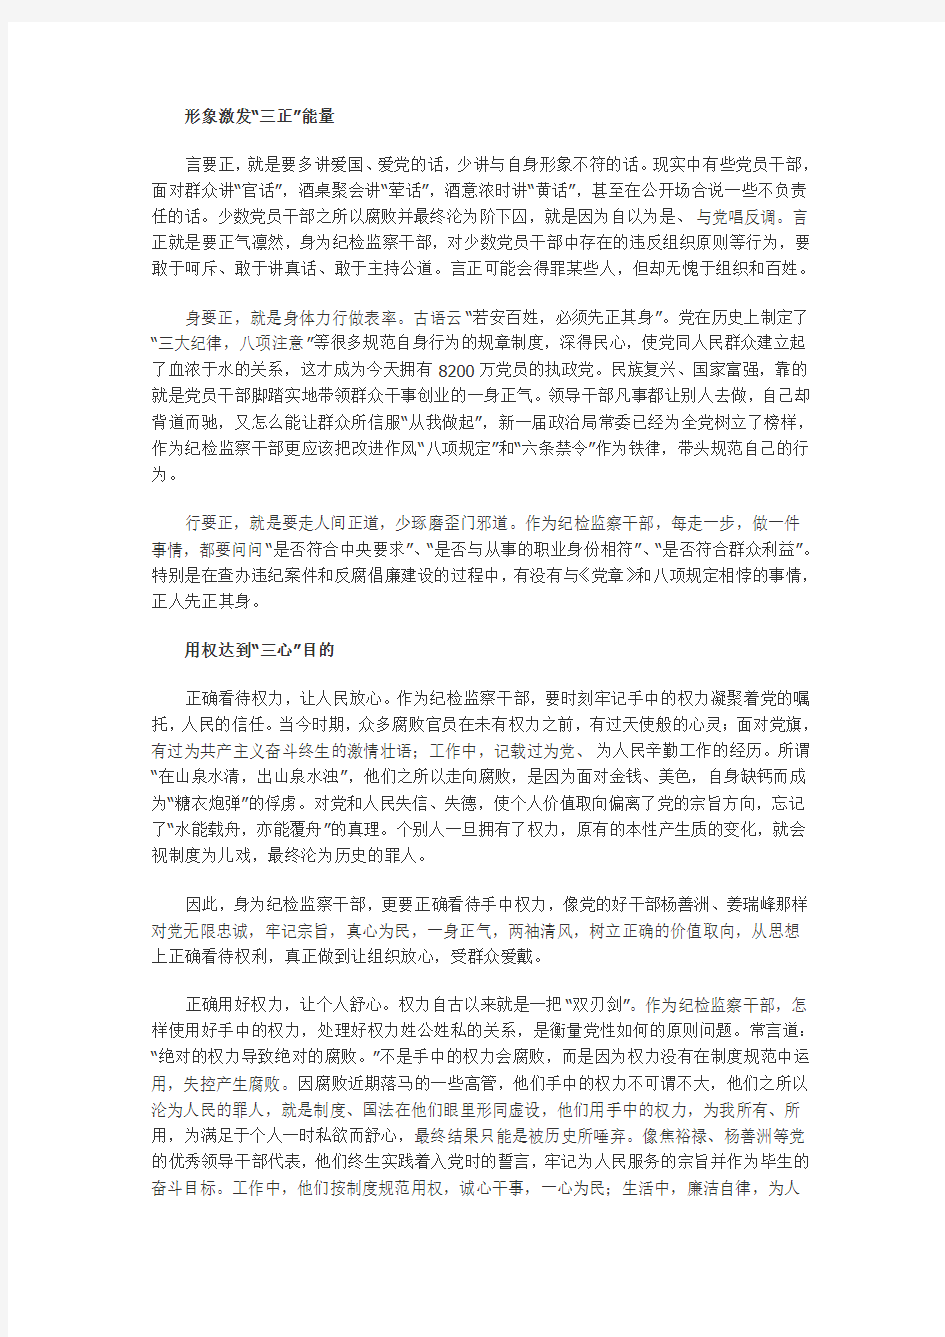 纪检监察干部要大力提升素质 在实现中国梦中做出独特贡献